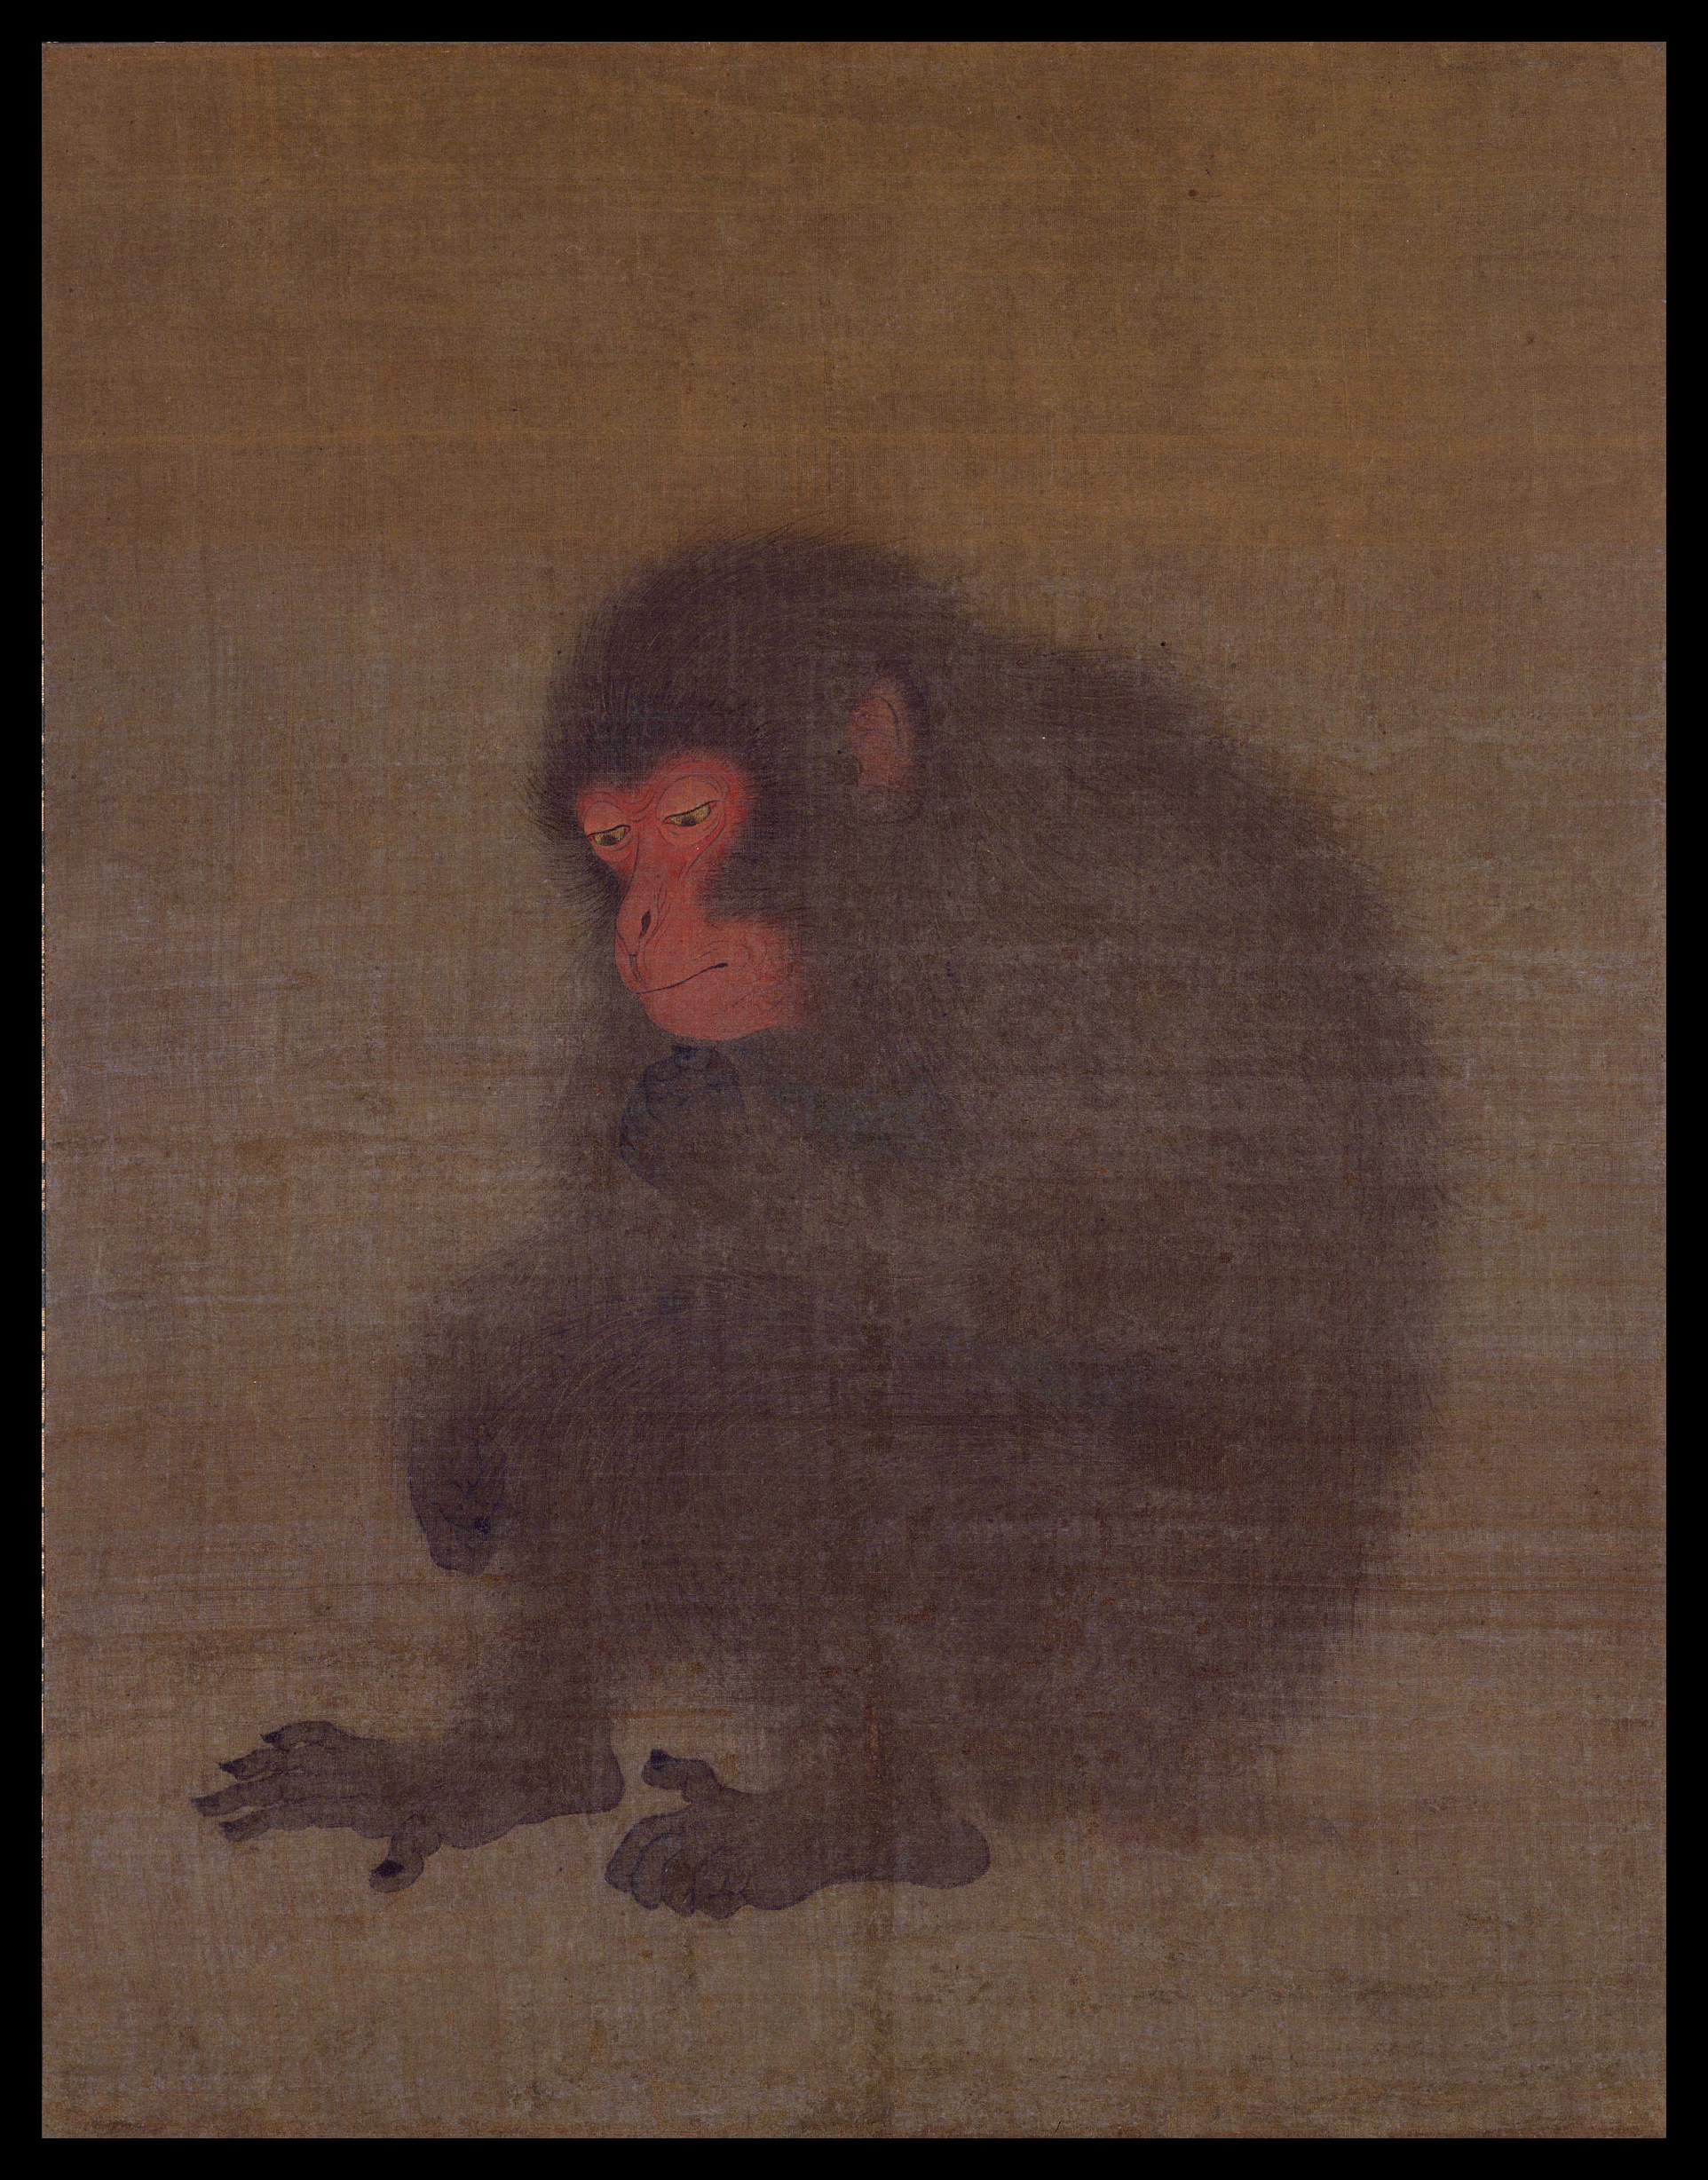 Un mono by Mao Song - siglo 12, 2do cuarto - 47.1 x 36.7 cm Museo Nacional de Tokio